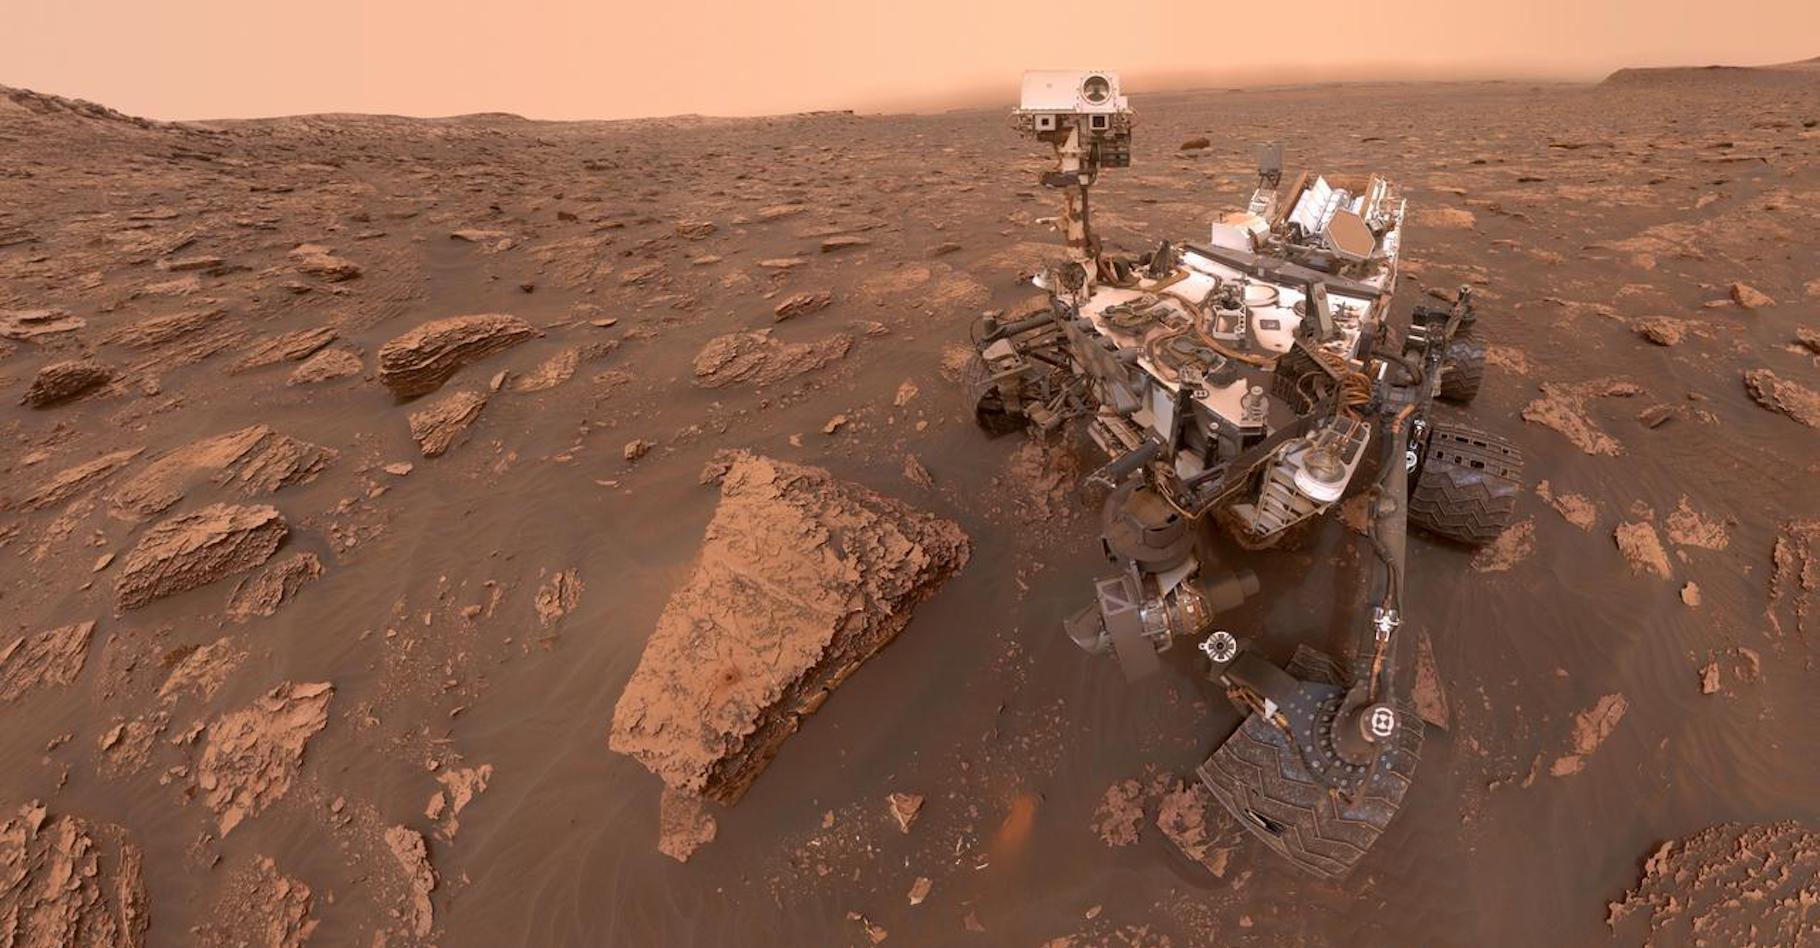 Le rover Curiosity explore la planète Mars depuis déjà plus de 10 ans. © Nasa, JPL Caltech, MSSS